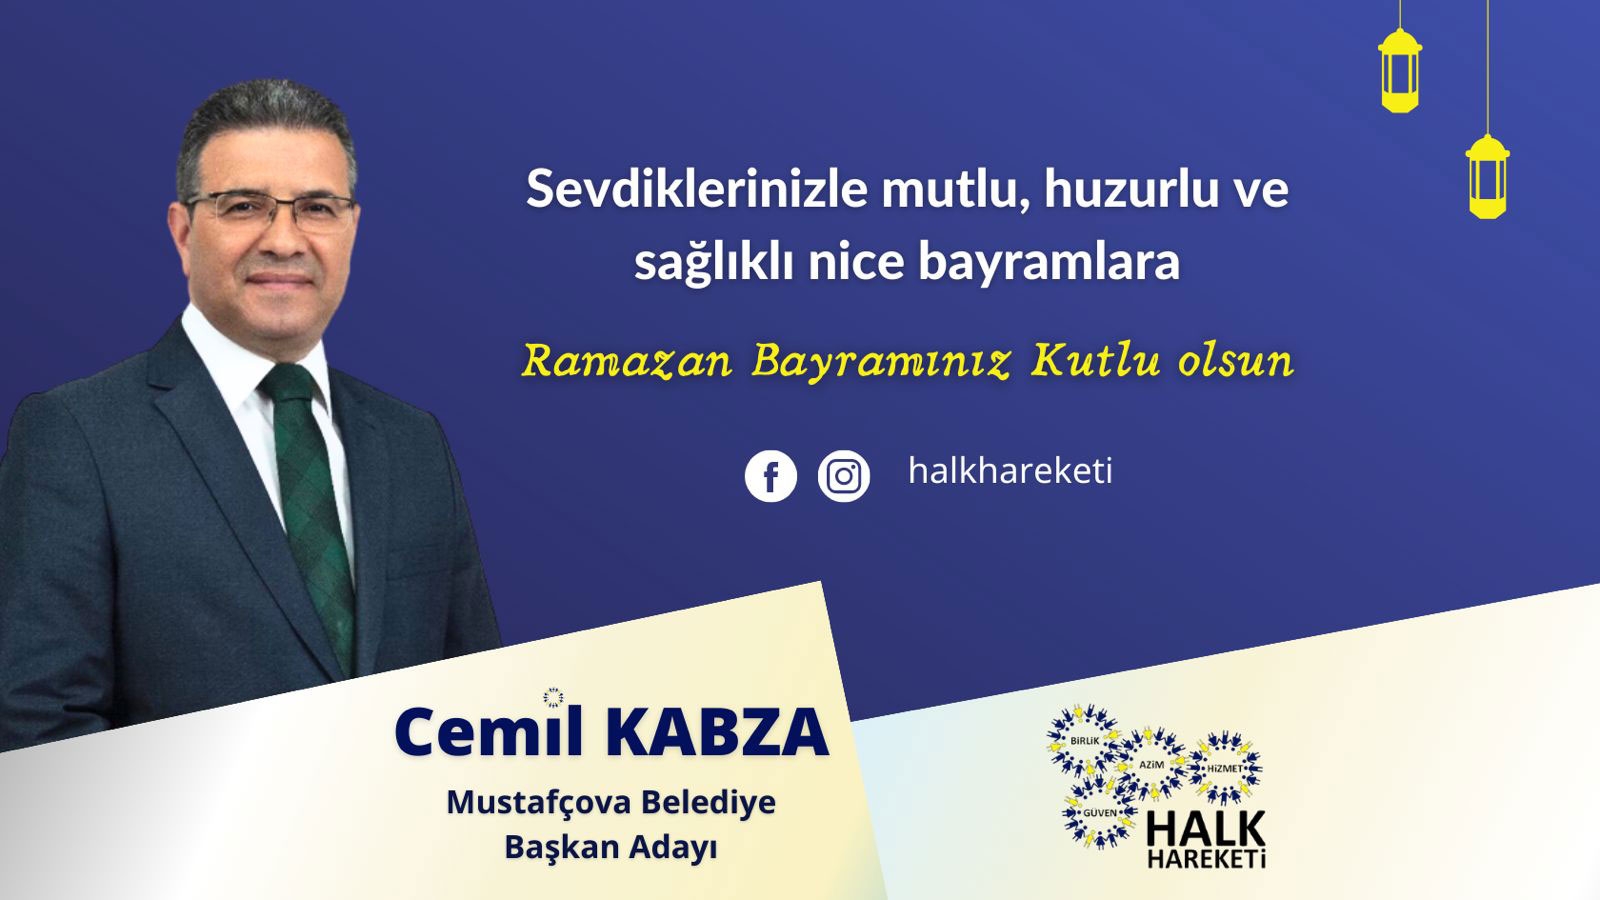 Halk Hareketi Başkanı Cemil KABZA Ramazan Bayramınızı kutlar